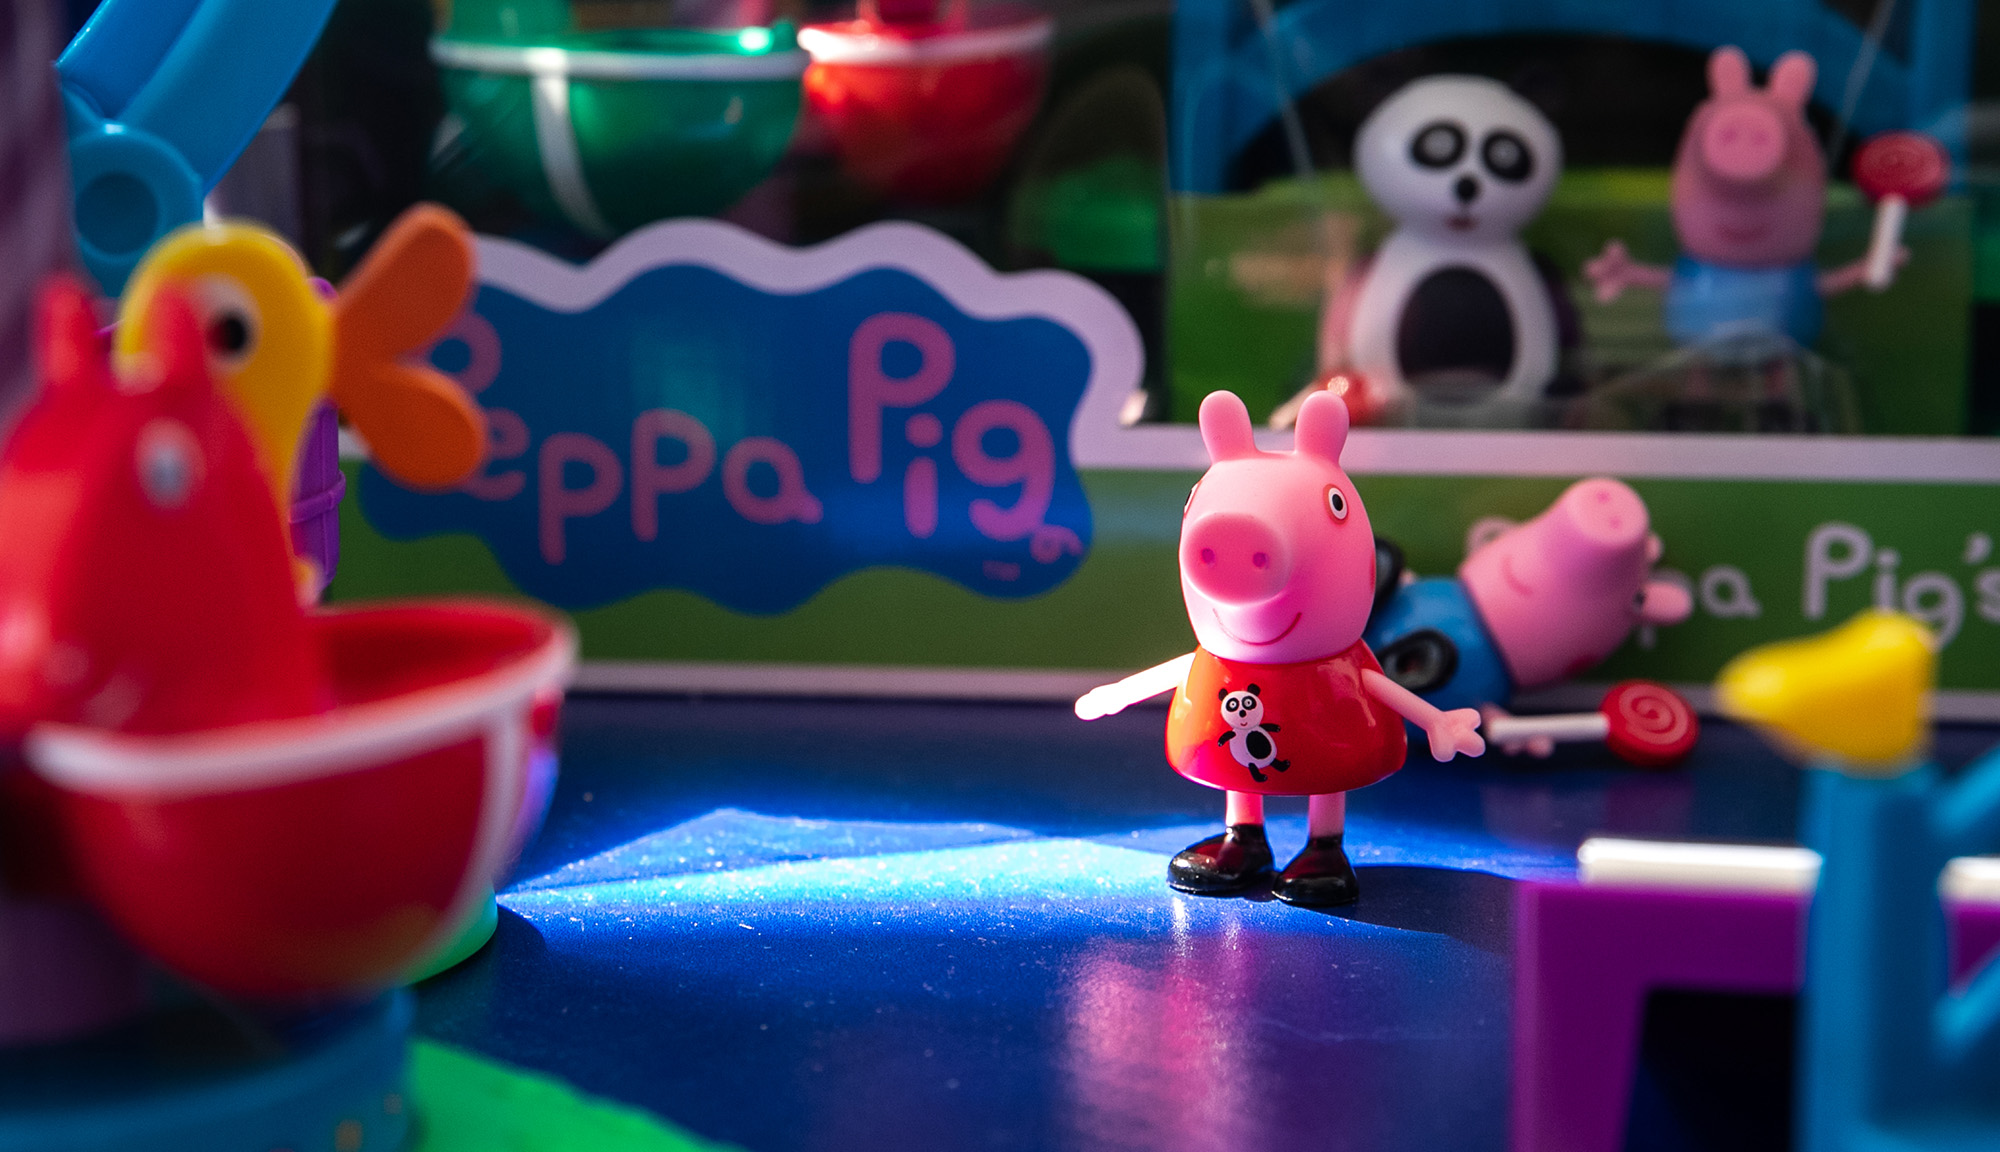 Peppa Pig Fun Fair playset